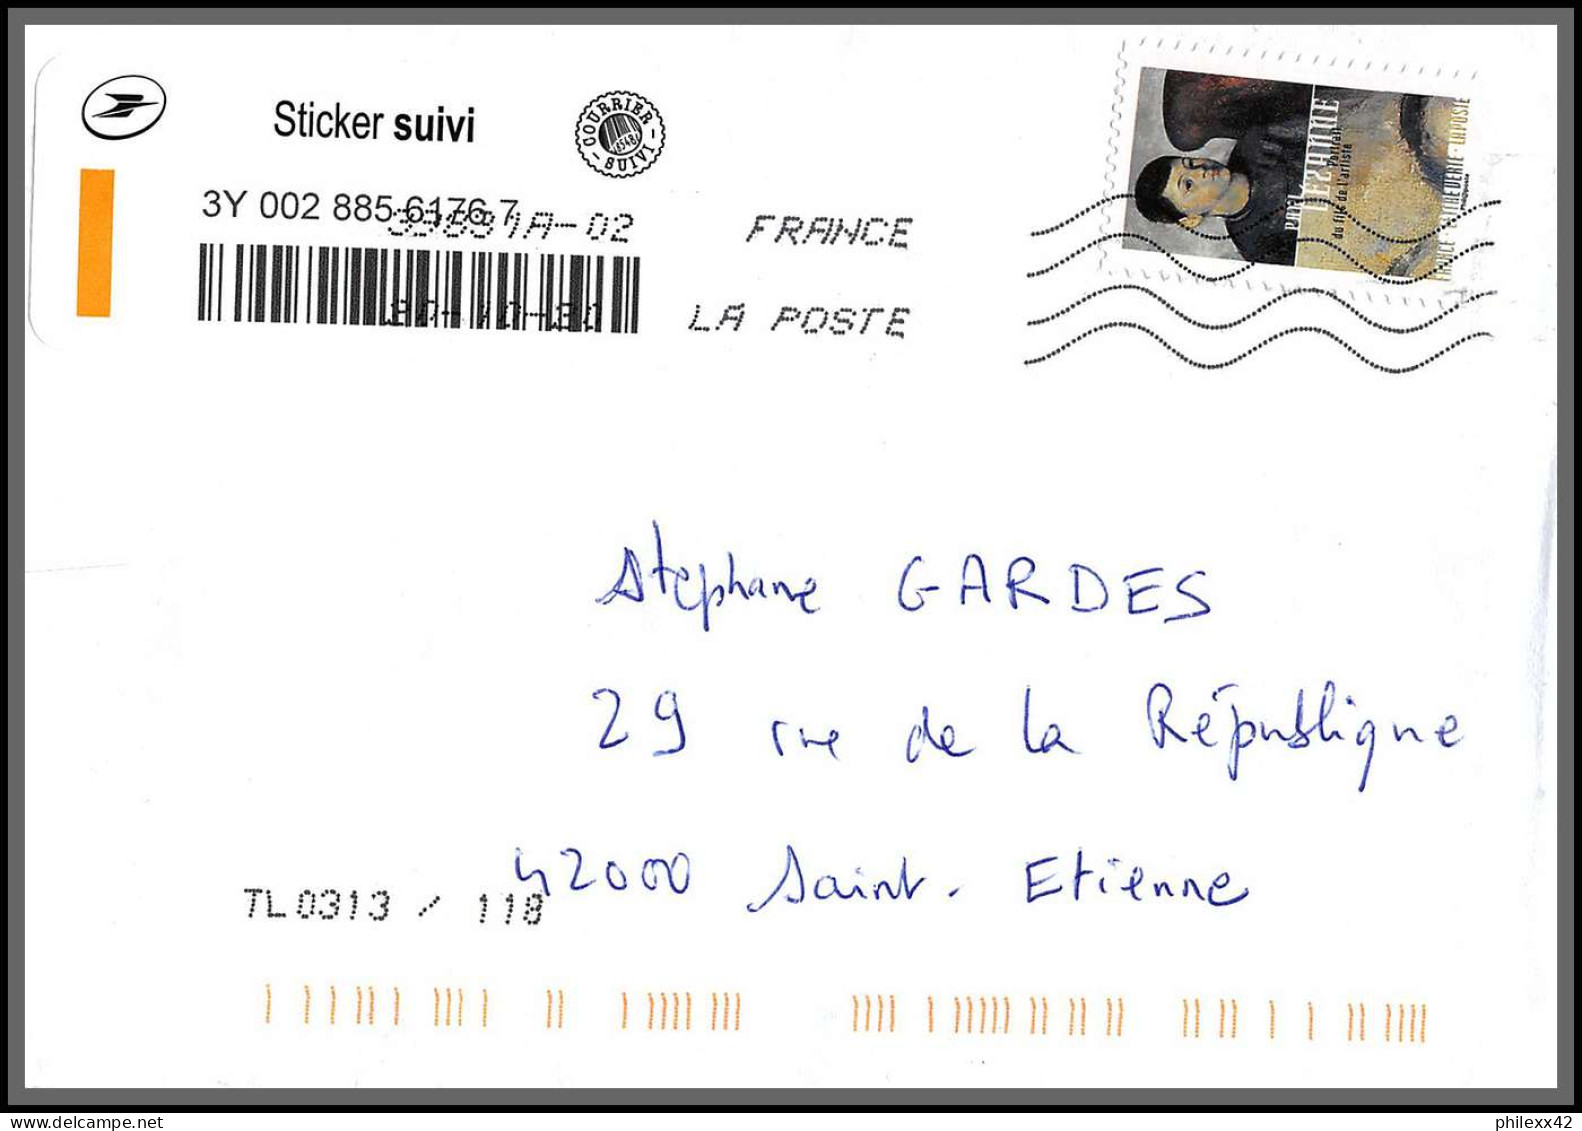 95881 - lot de 16 courriers lettres enveloppes de l'année 2020 divers affranchissements en EUROS